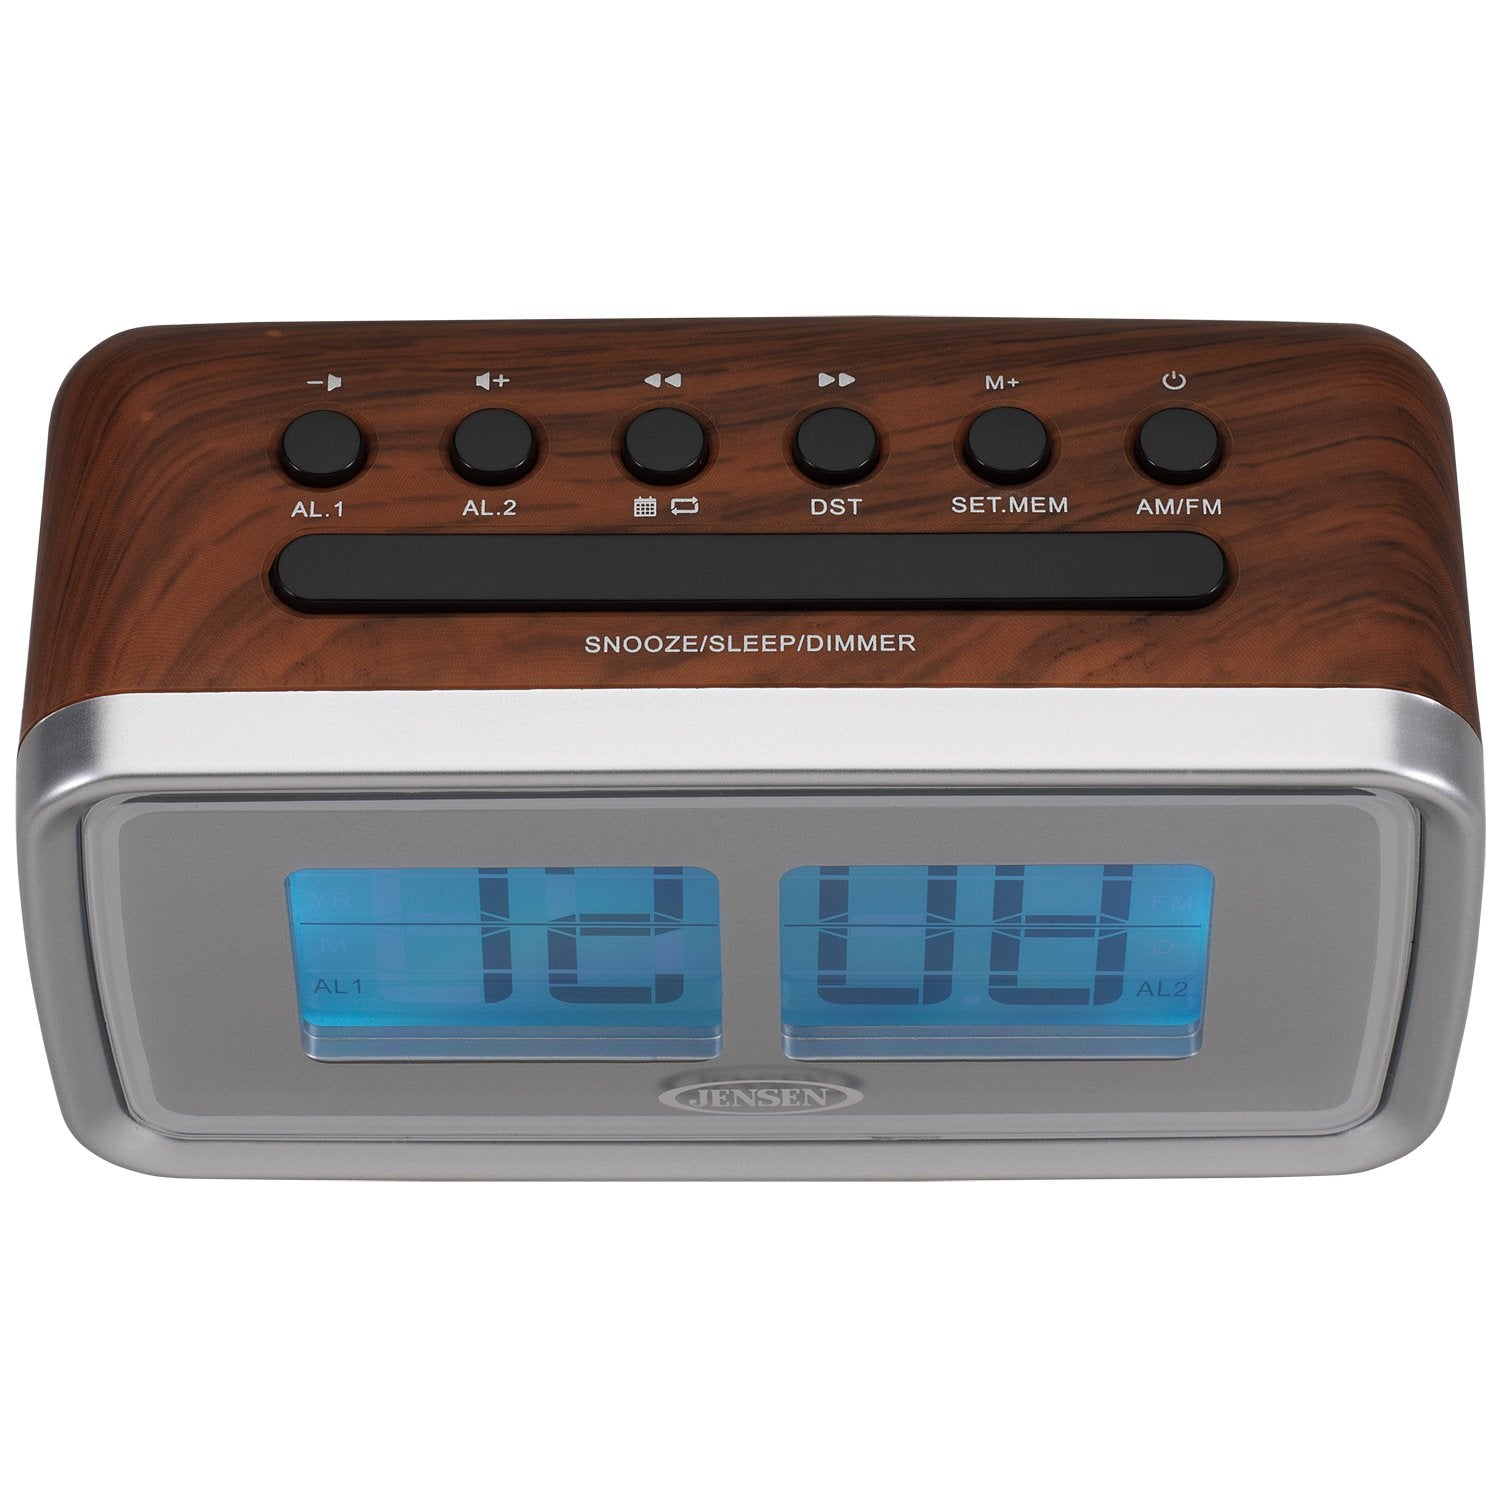 Jensen JCR-232 Clock Radio, Brown